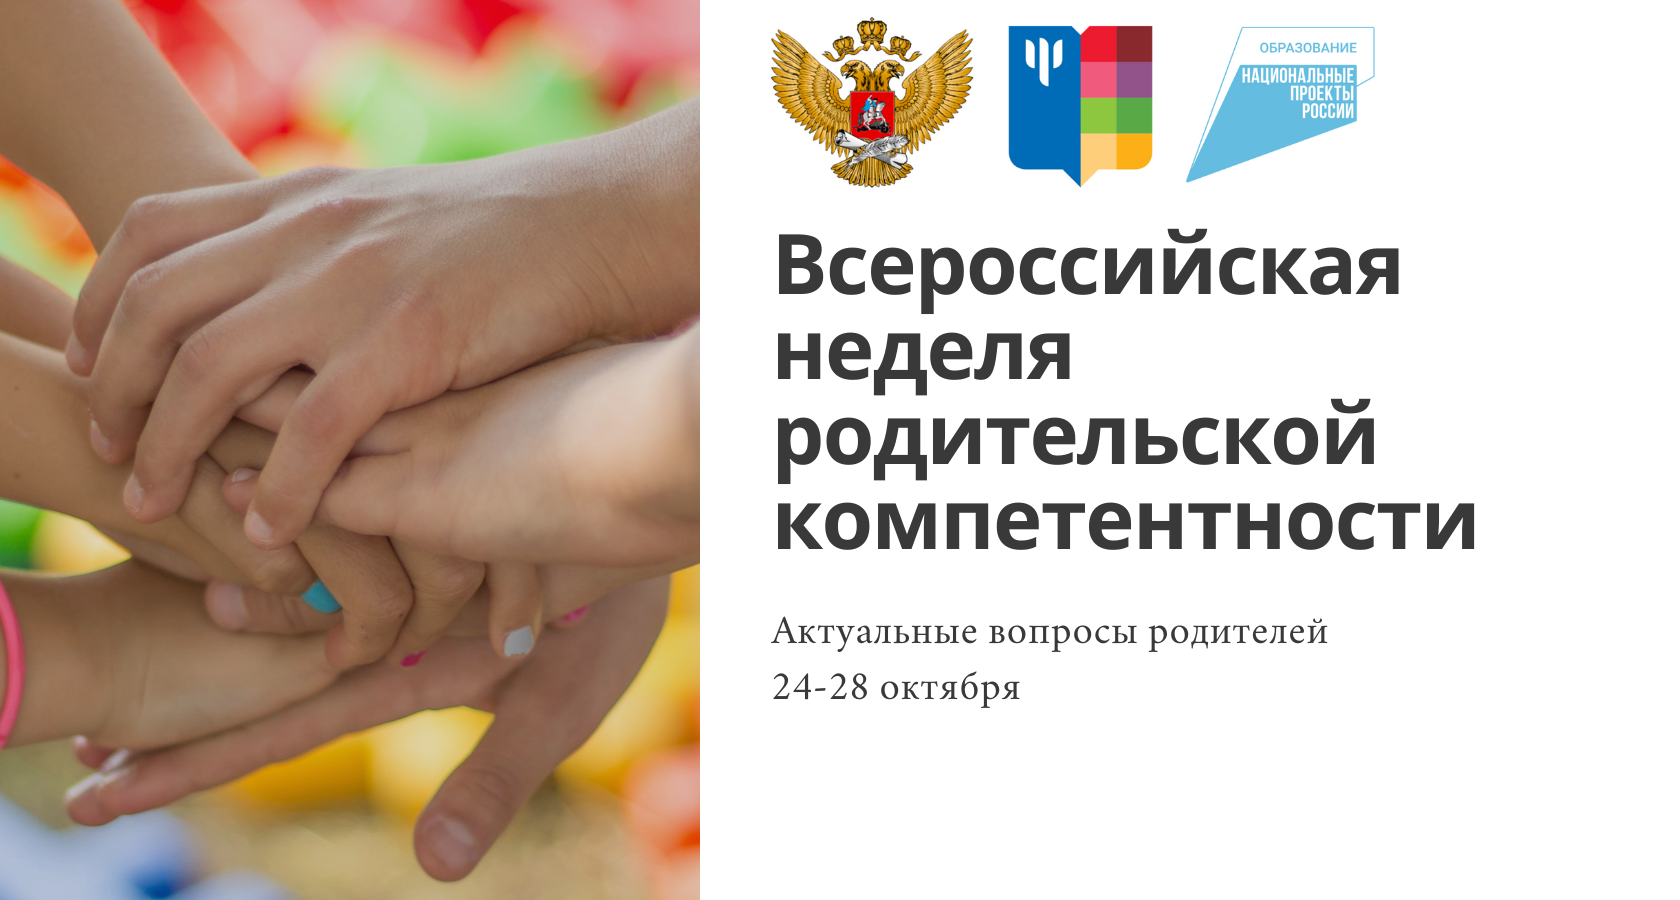 С 24 октября 2022 года стартует Всероссийская неделя родительской компетентности.